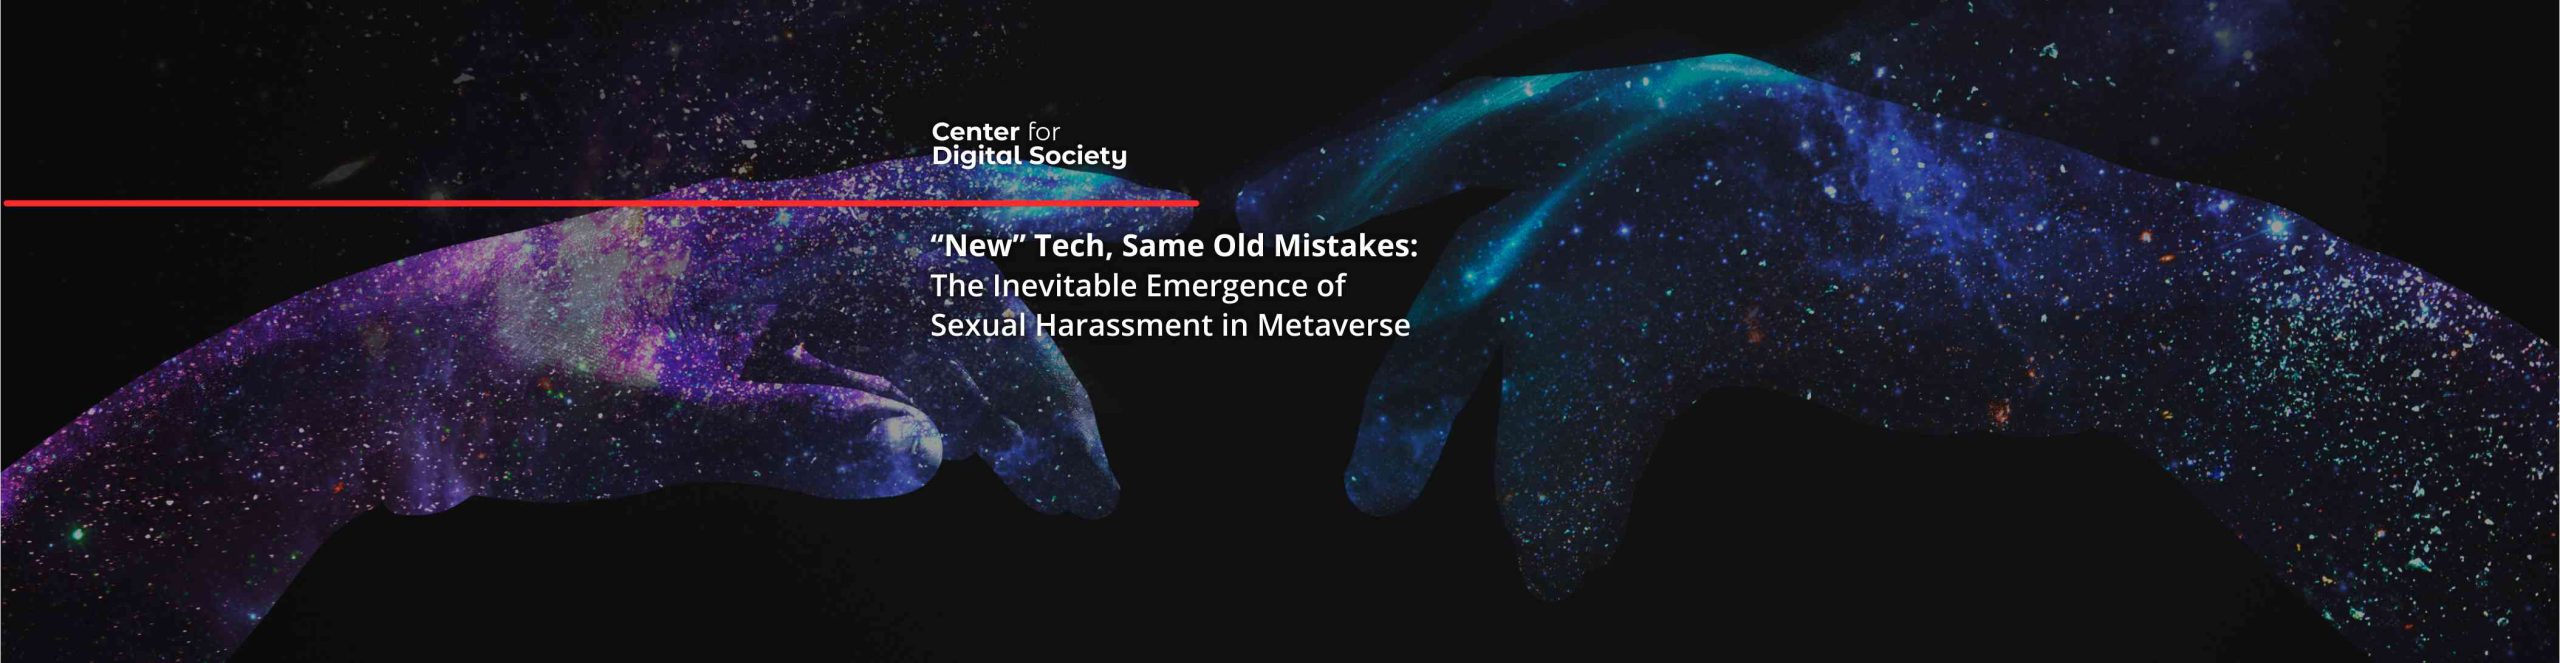 “New” Tech, Same Old Mistakes: Munculnya Pelecehan Seksual yang Tak Terhindari di Metaverse